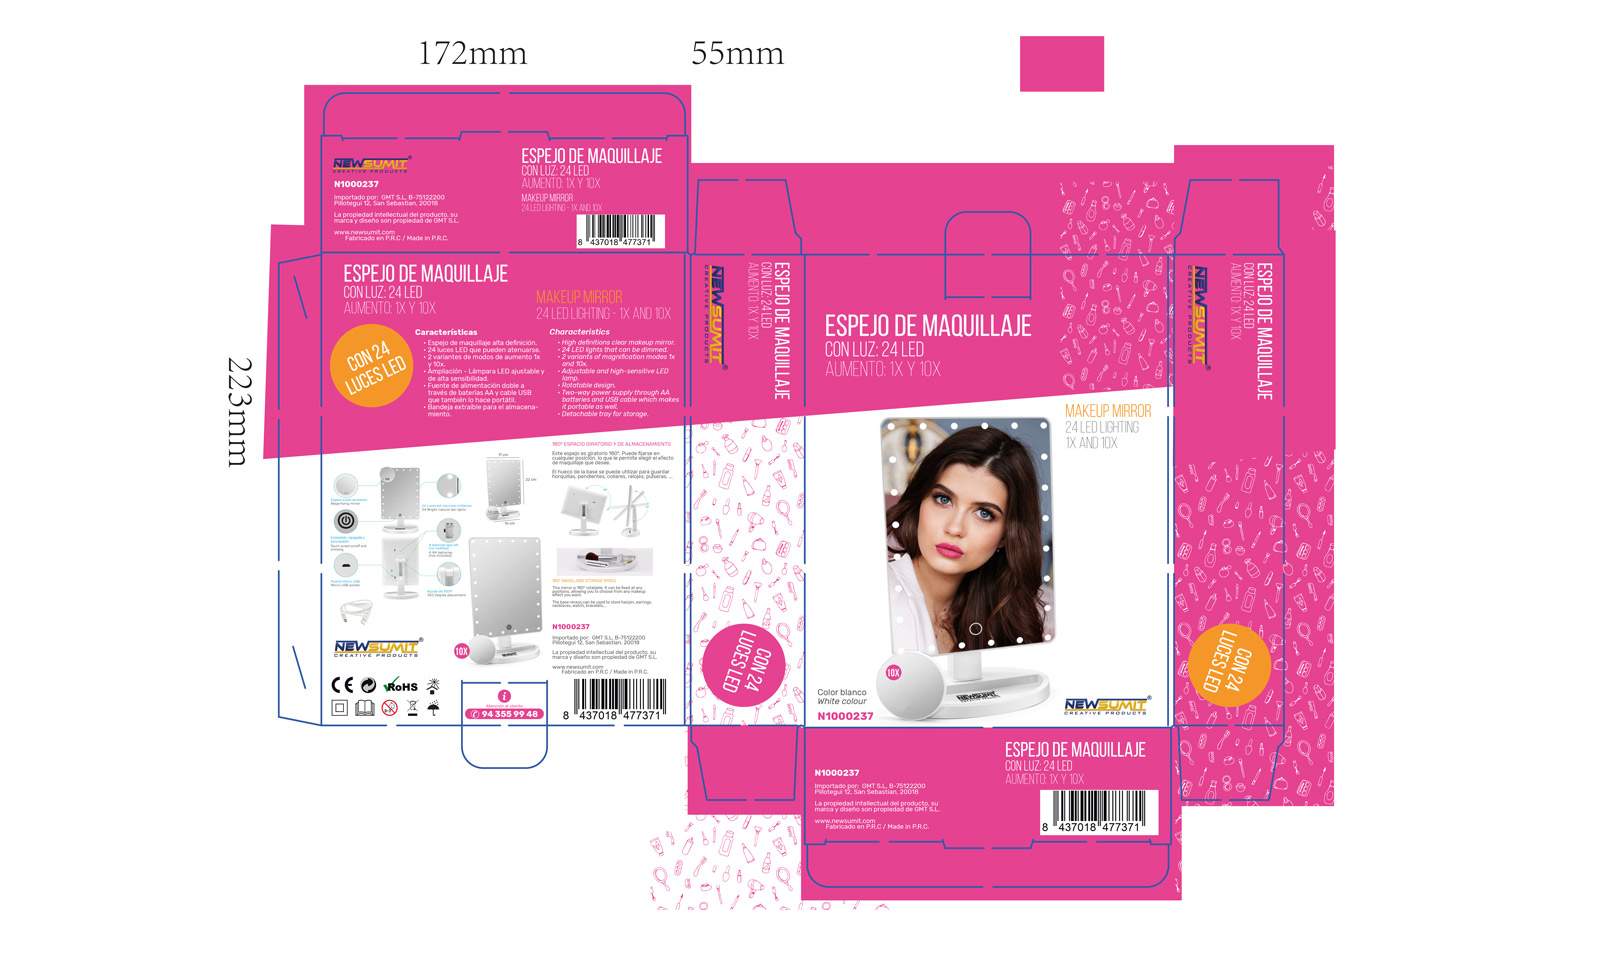 Diseño gráfico y creativo de etiquetas y packaging de productos de venta en AMAZON